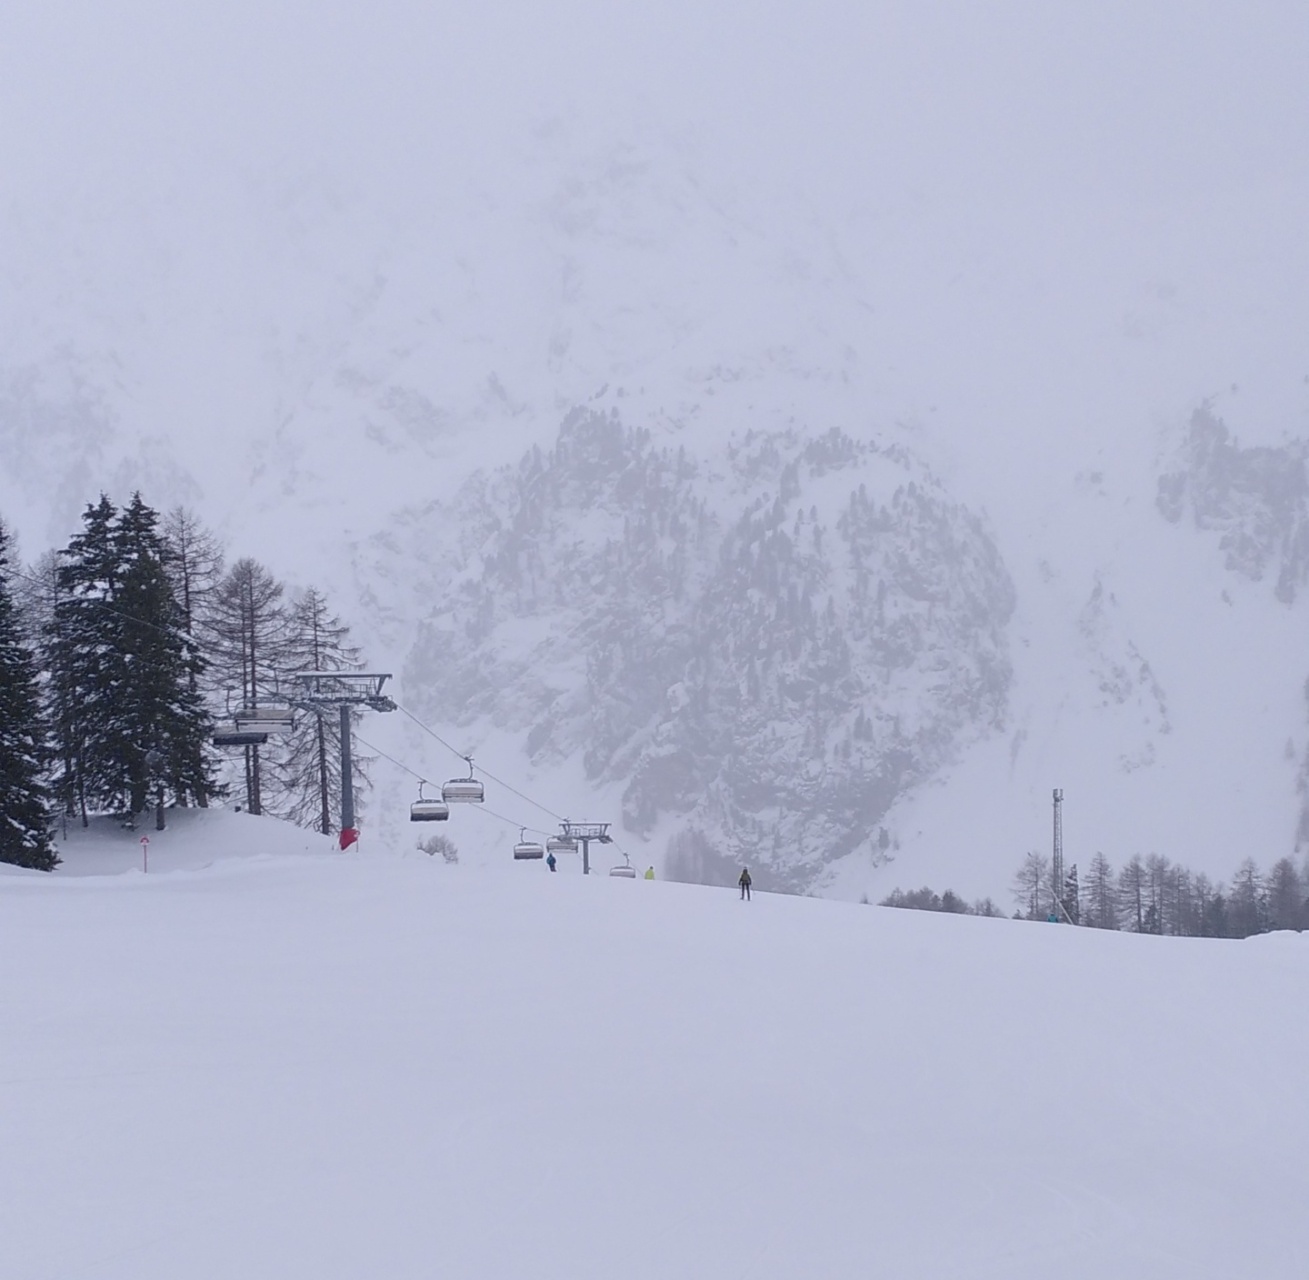 Alpen: van rustig weer naar storm en veel neerslag